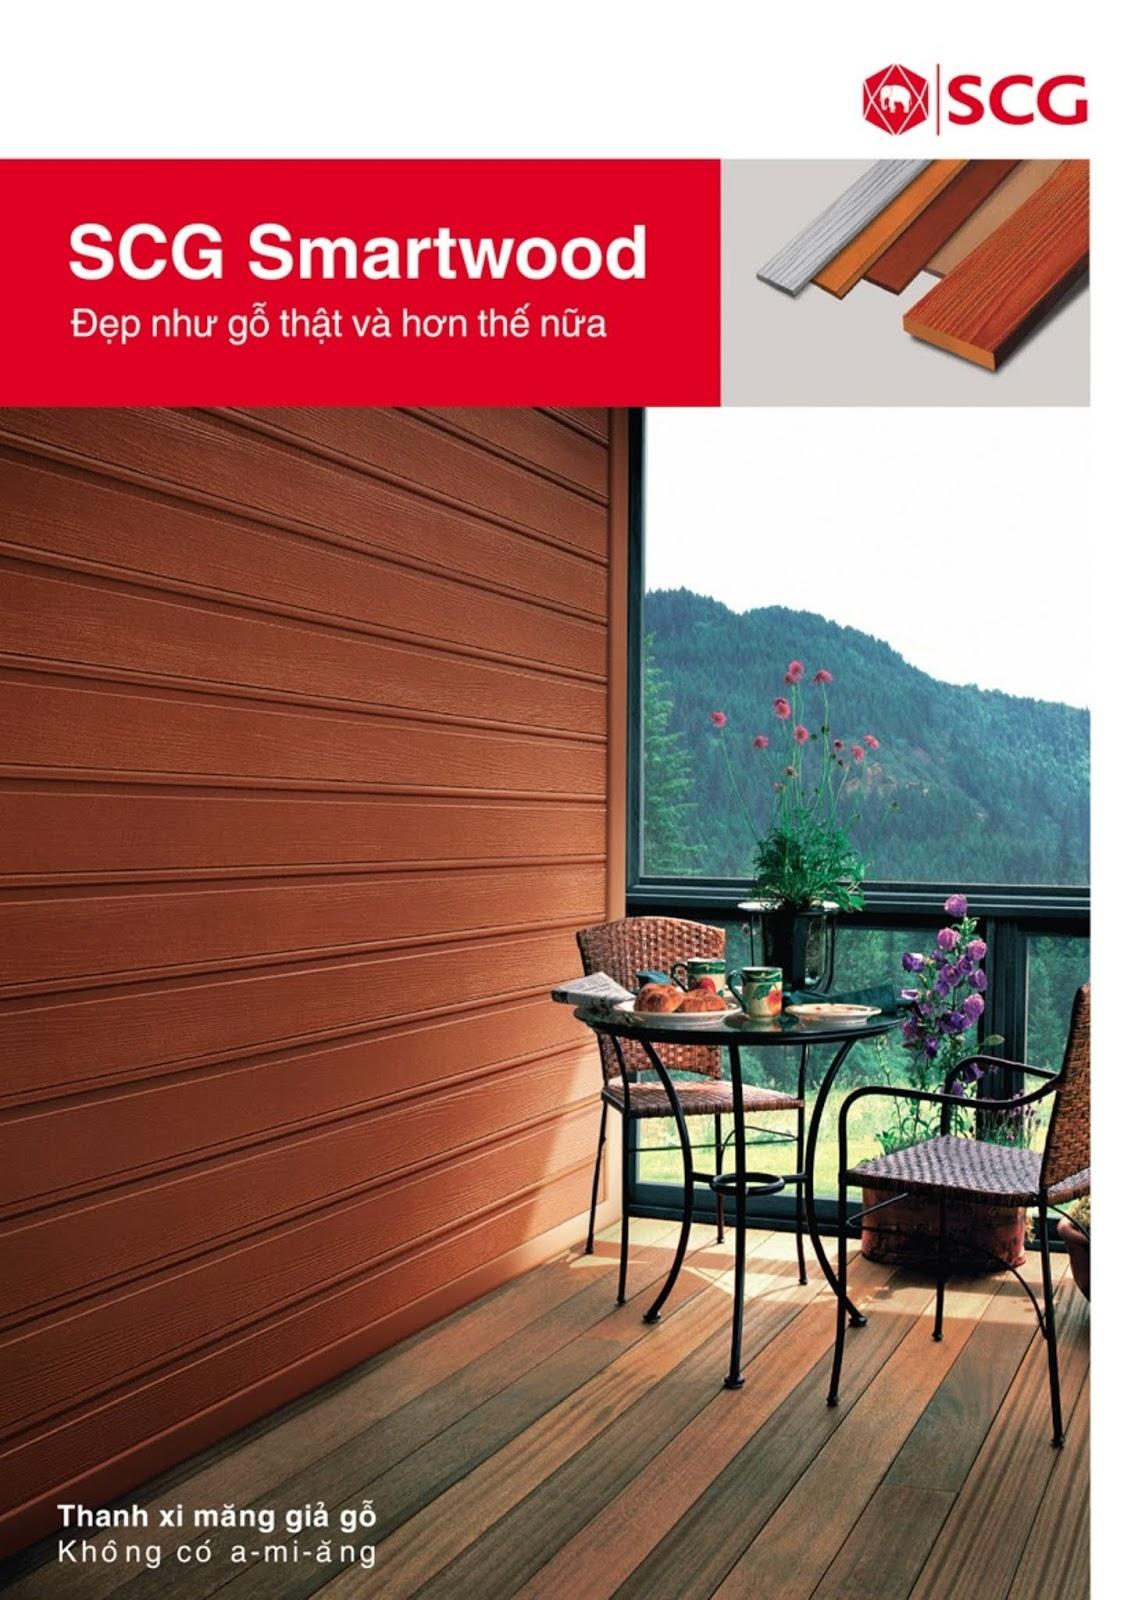 Tấm smartwood có độ bền cao và thân thiện với môi trường